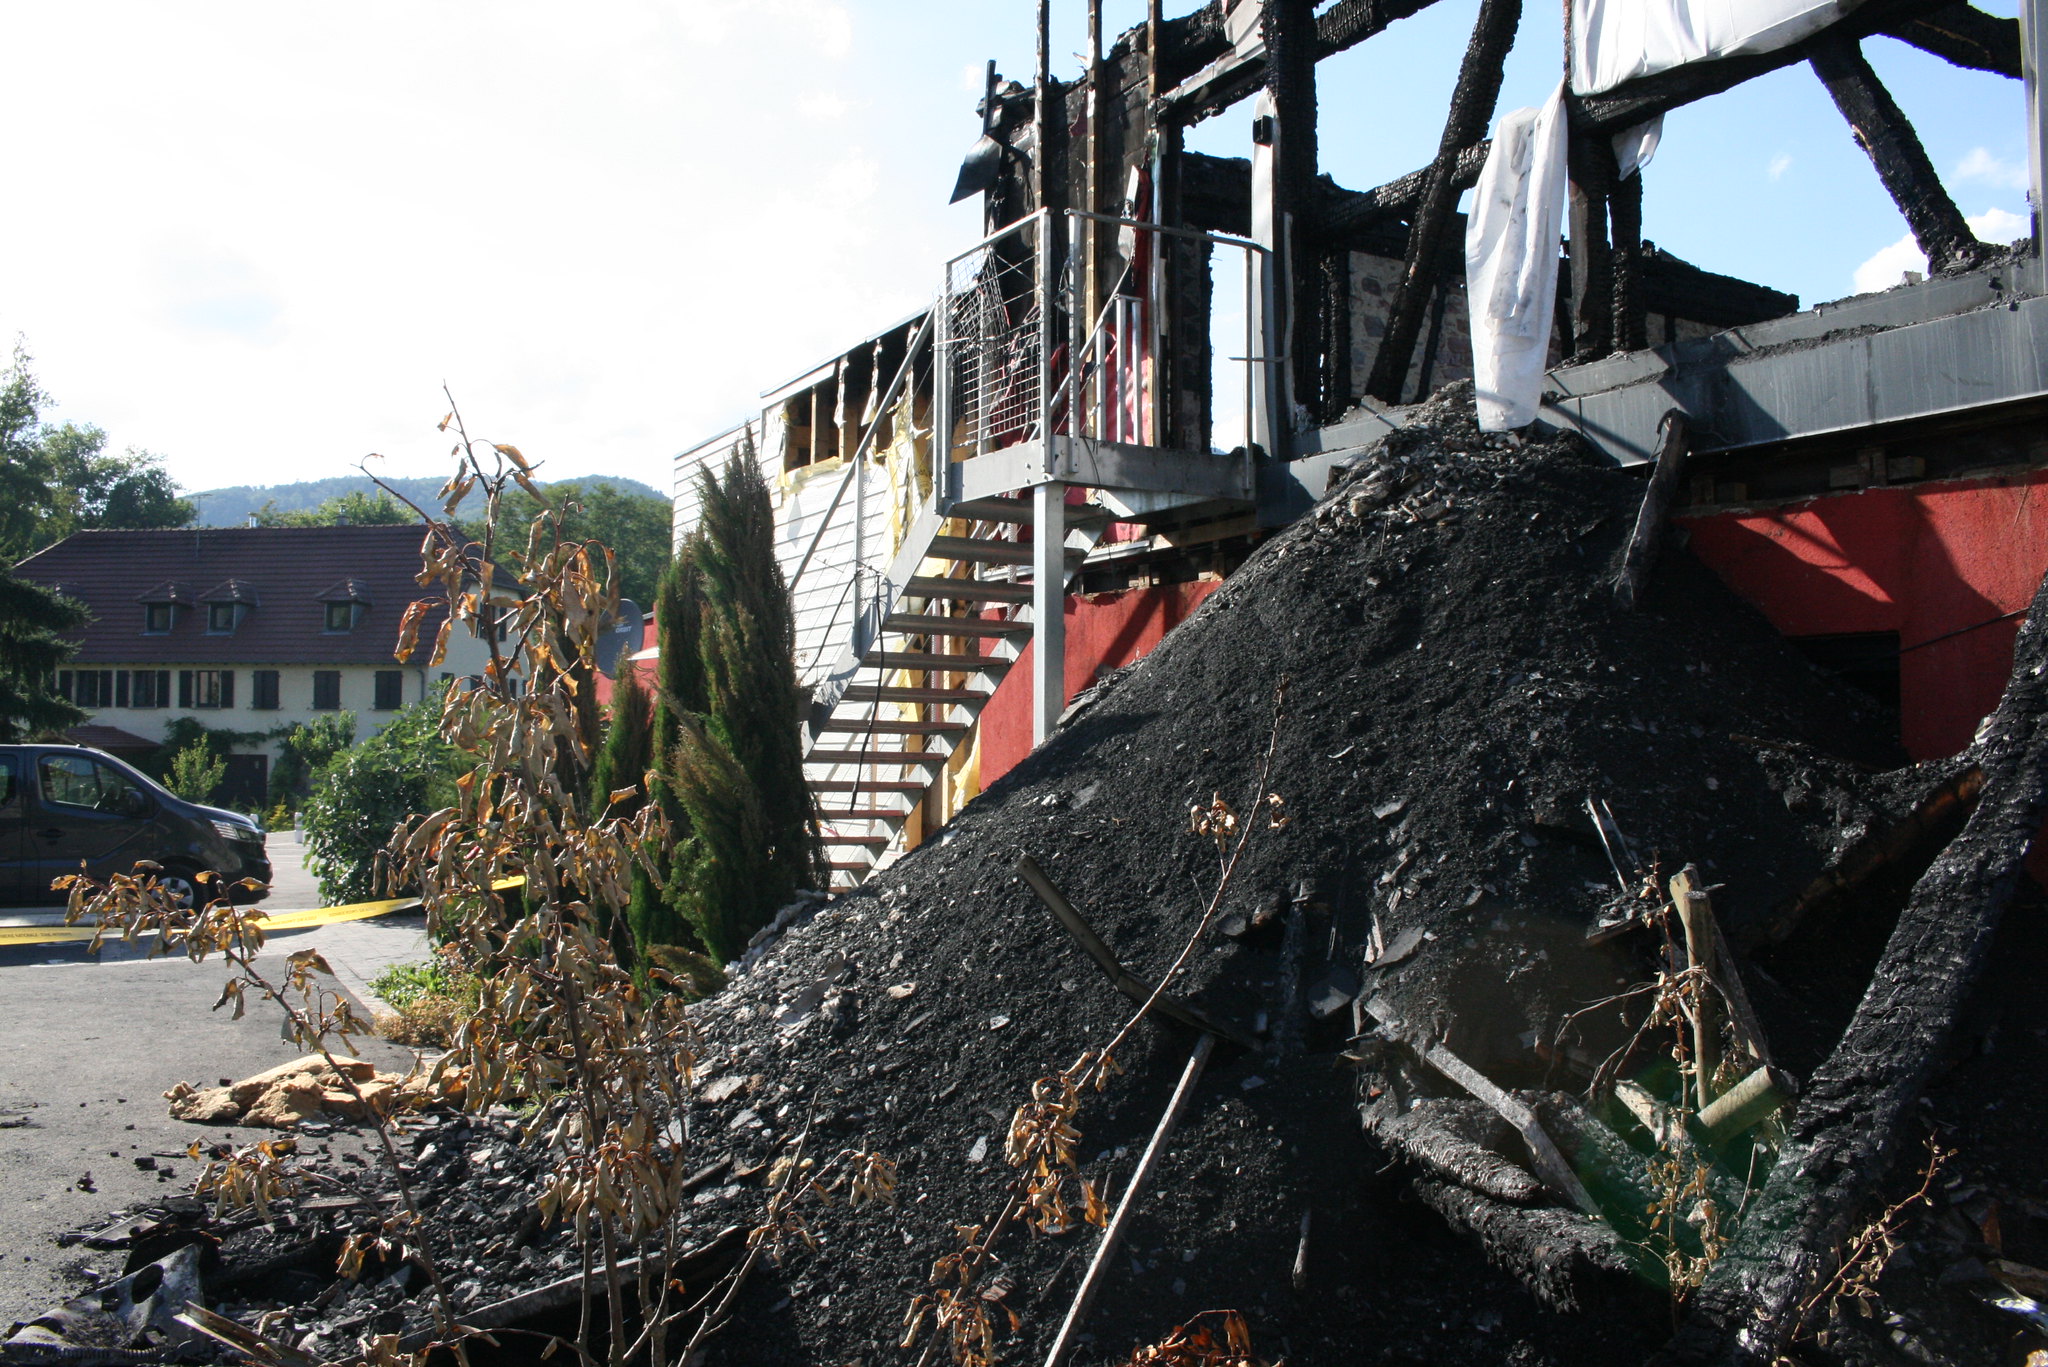 Incendie de Wintzenheim : l’enquête administrative démontre une « succession de défaillances »